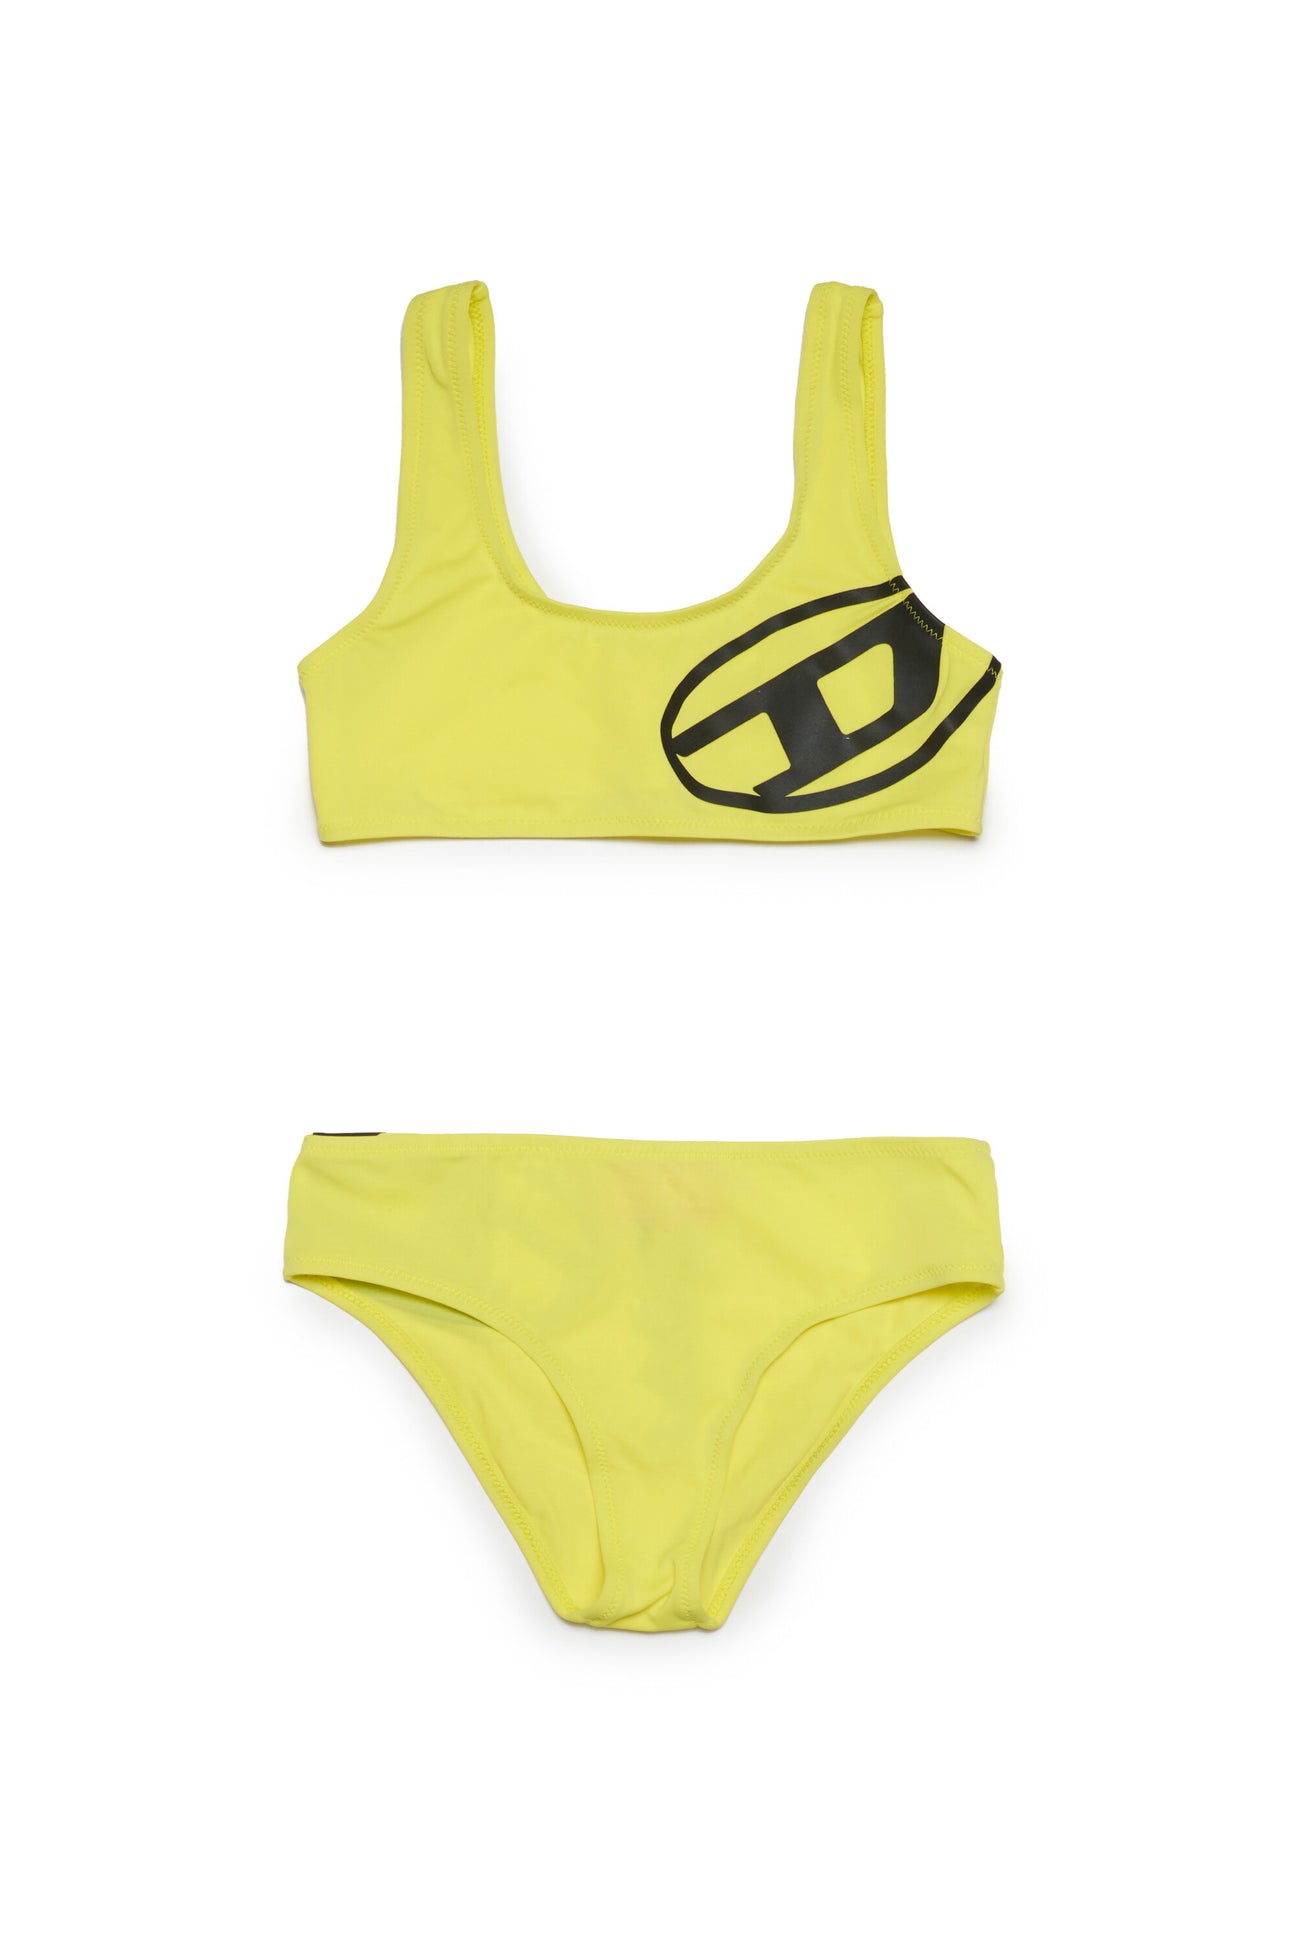 Oval D bikini swimsuit 